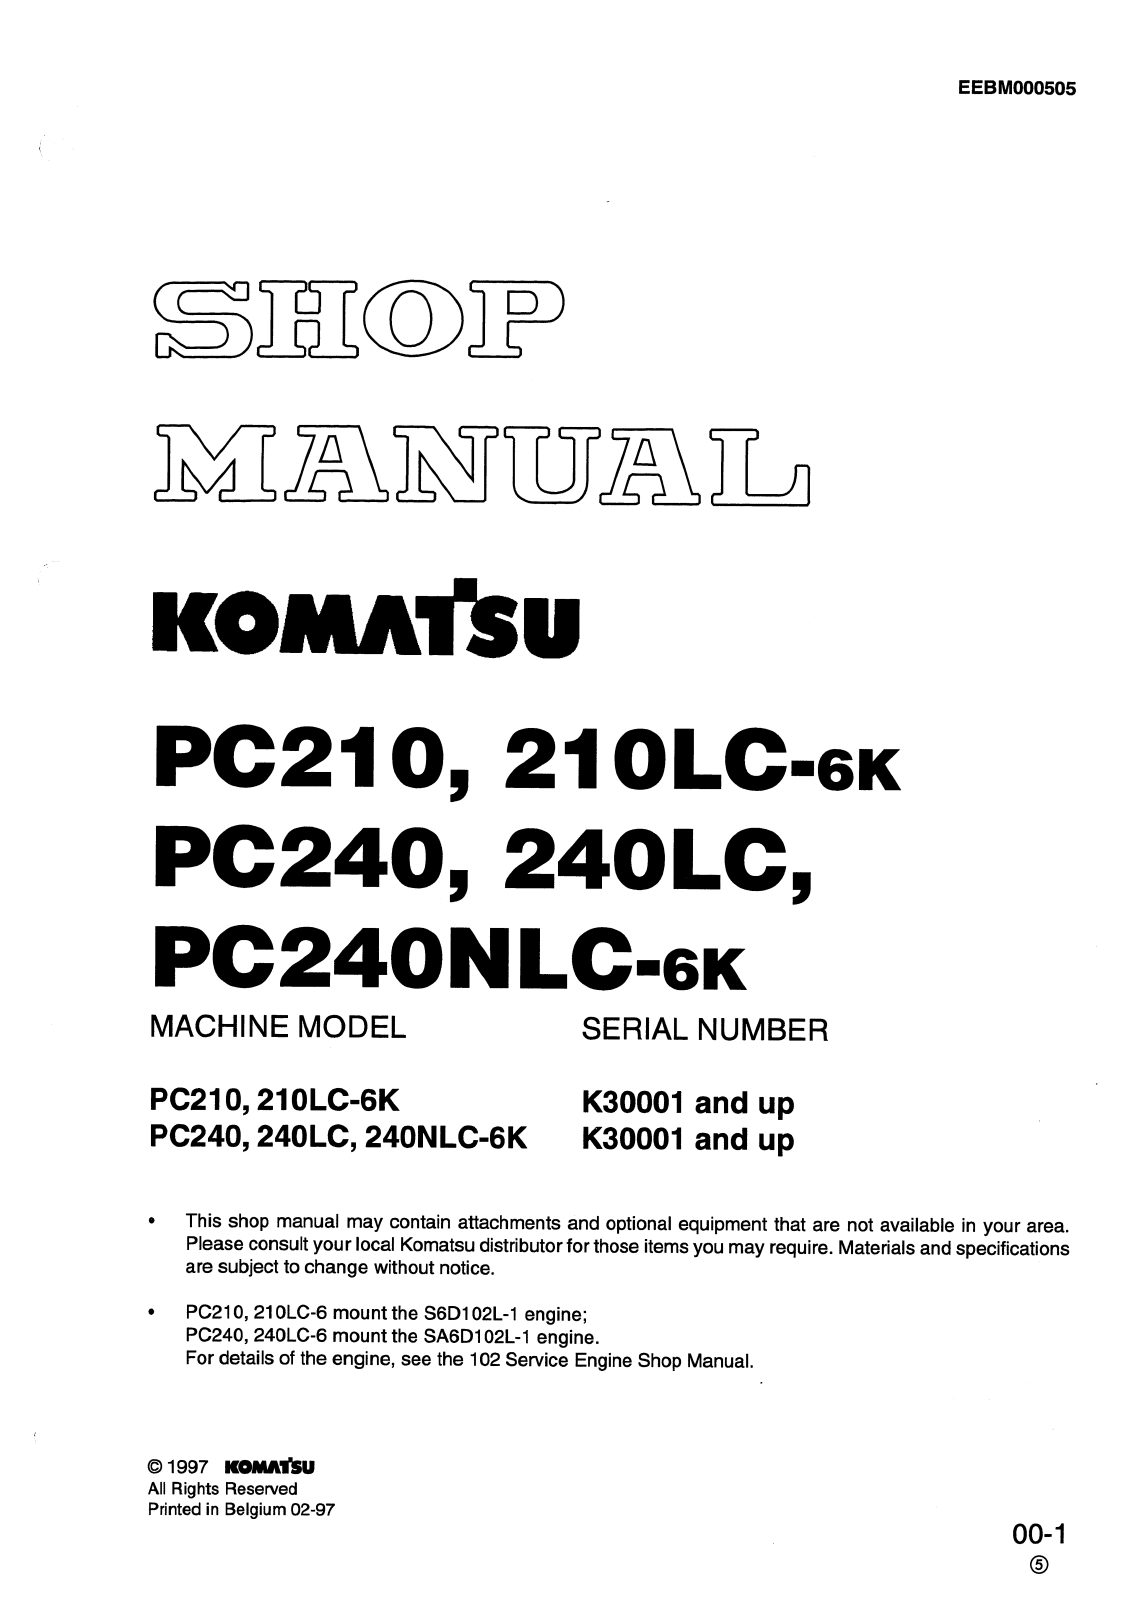 Komatsu PC210, PC210LC-6K, PC240, PC240LC, PC240NLC-6k Service Manual